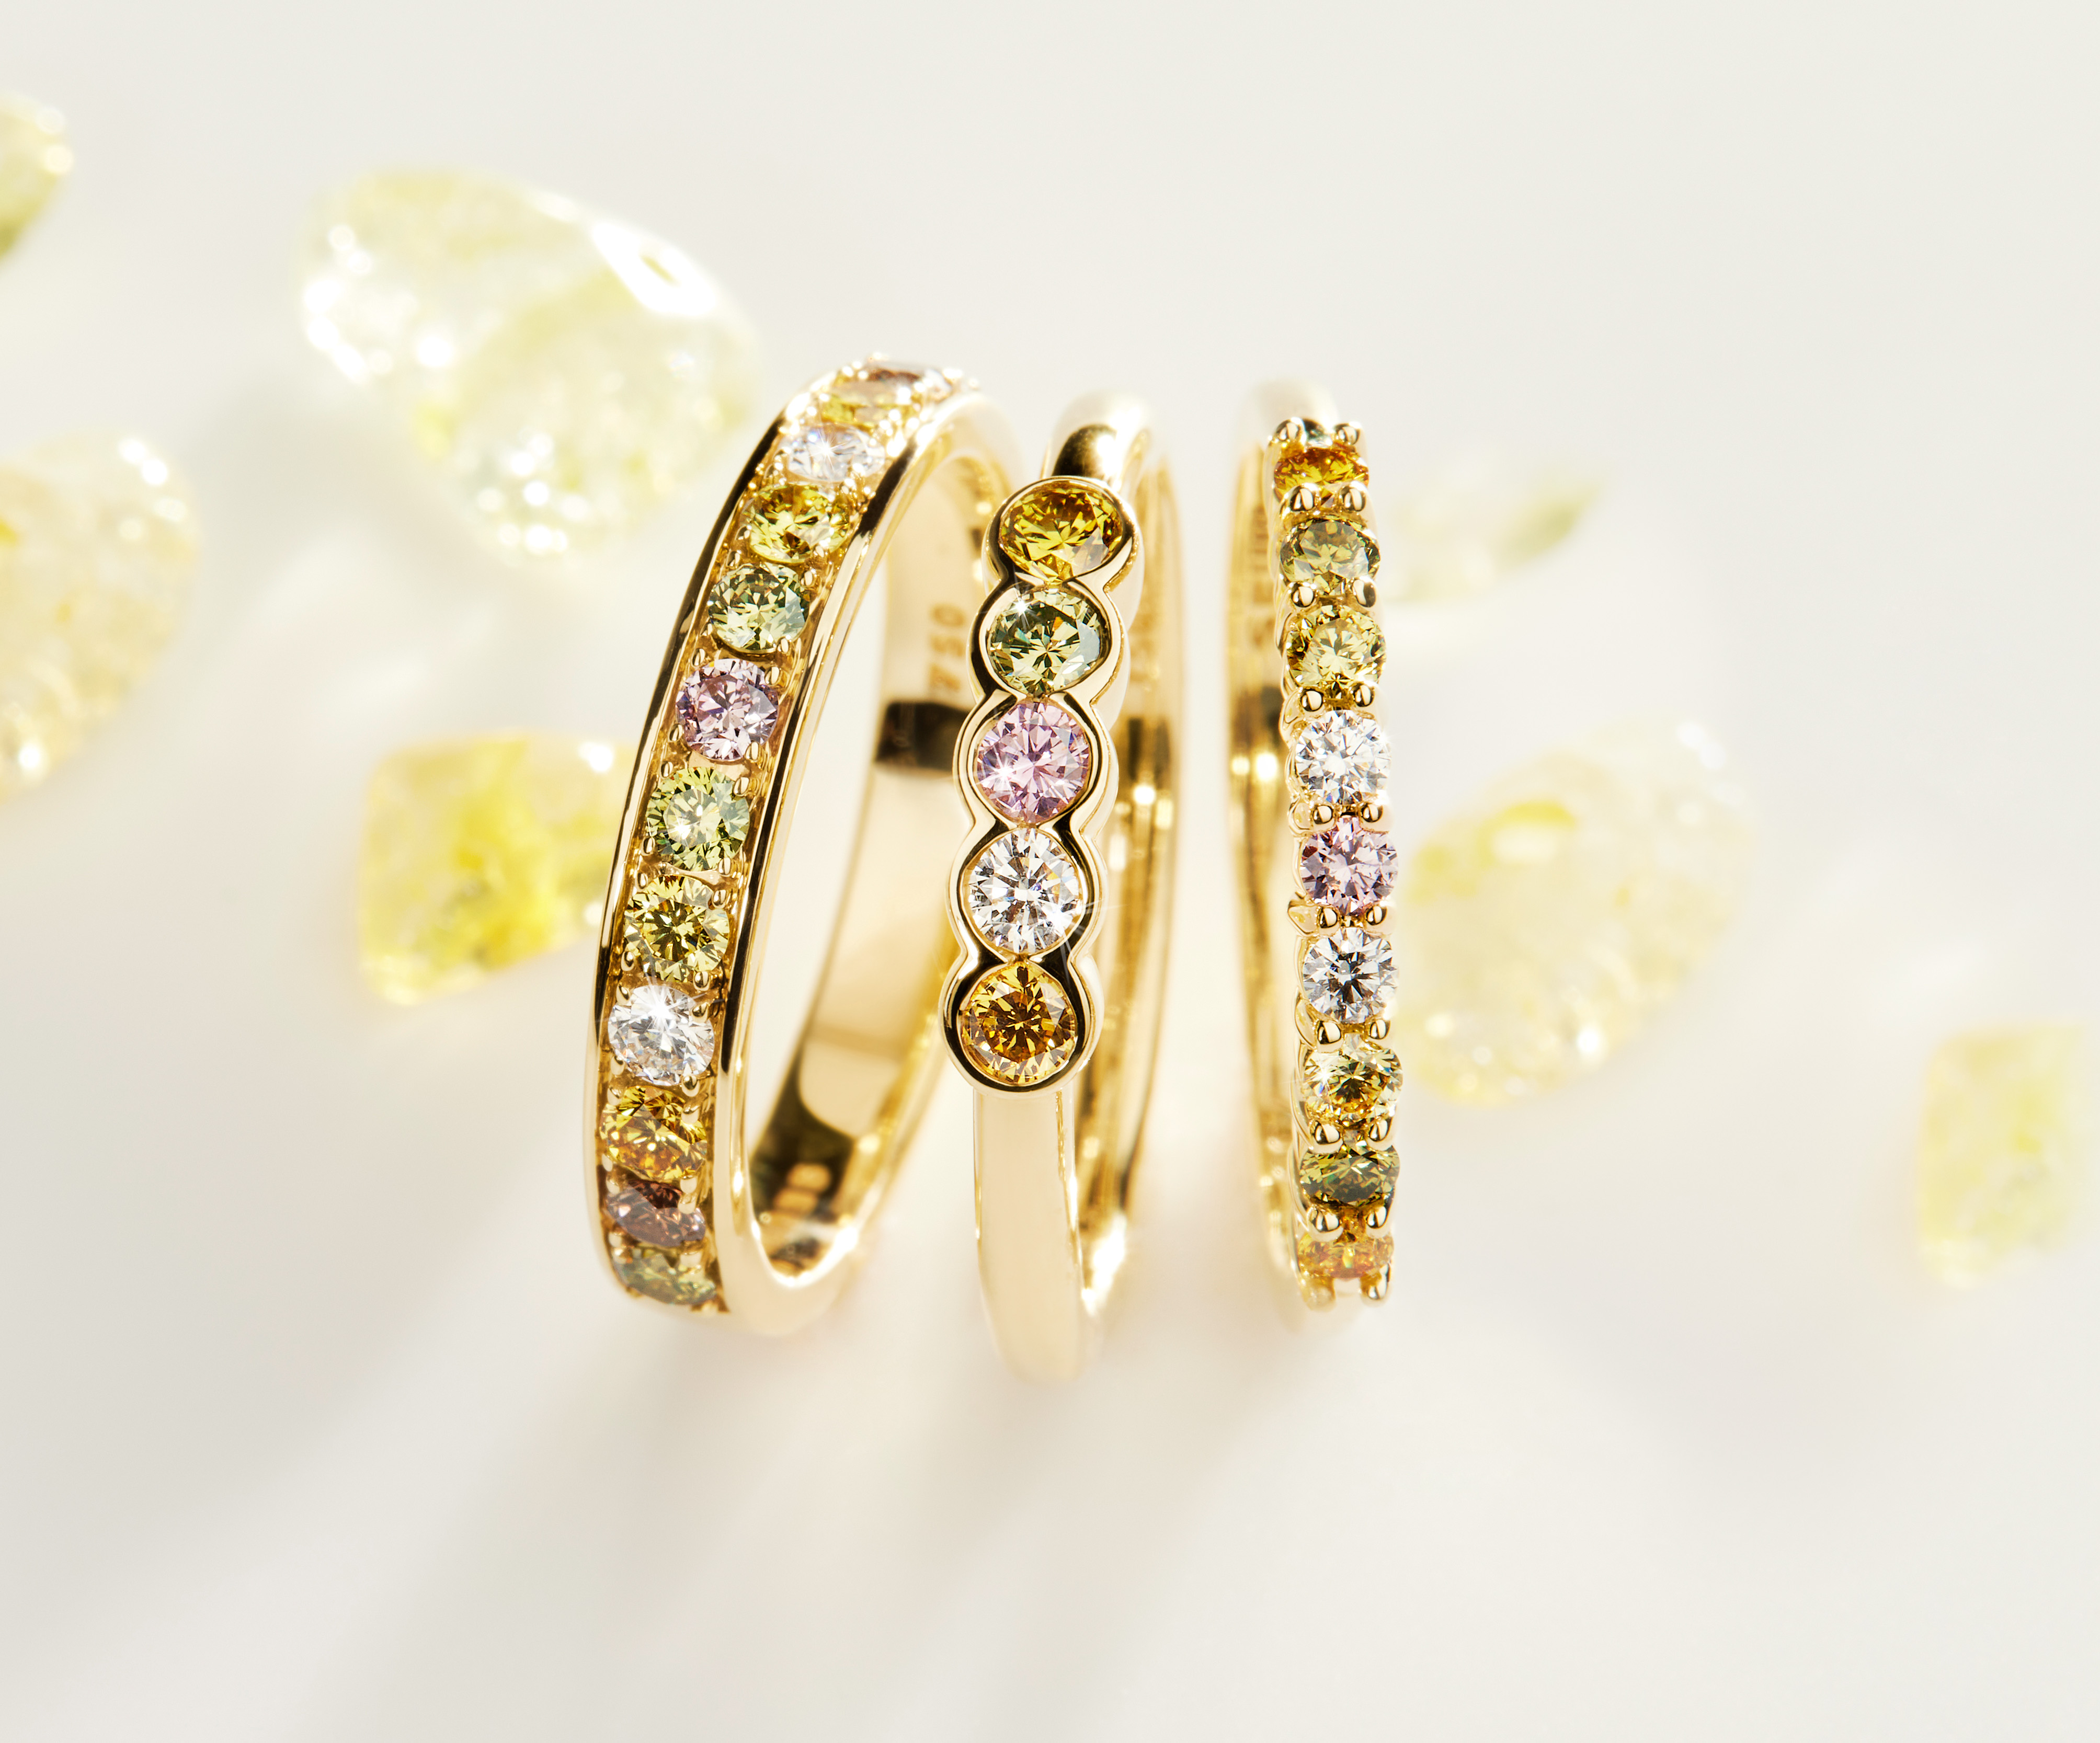 Fancy colour diamonds: New Australian supplier has